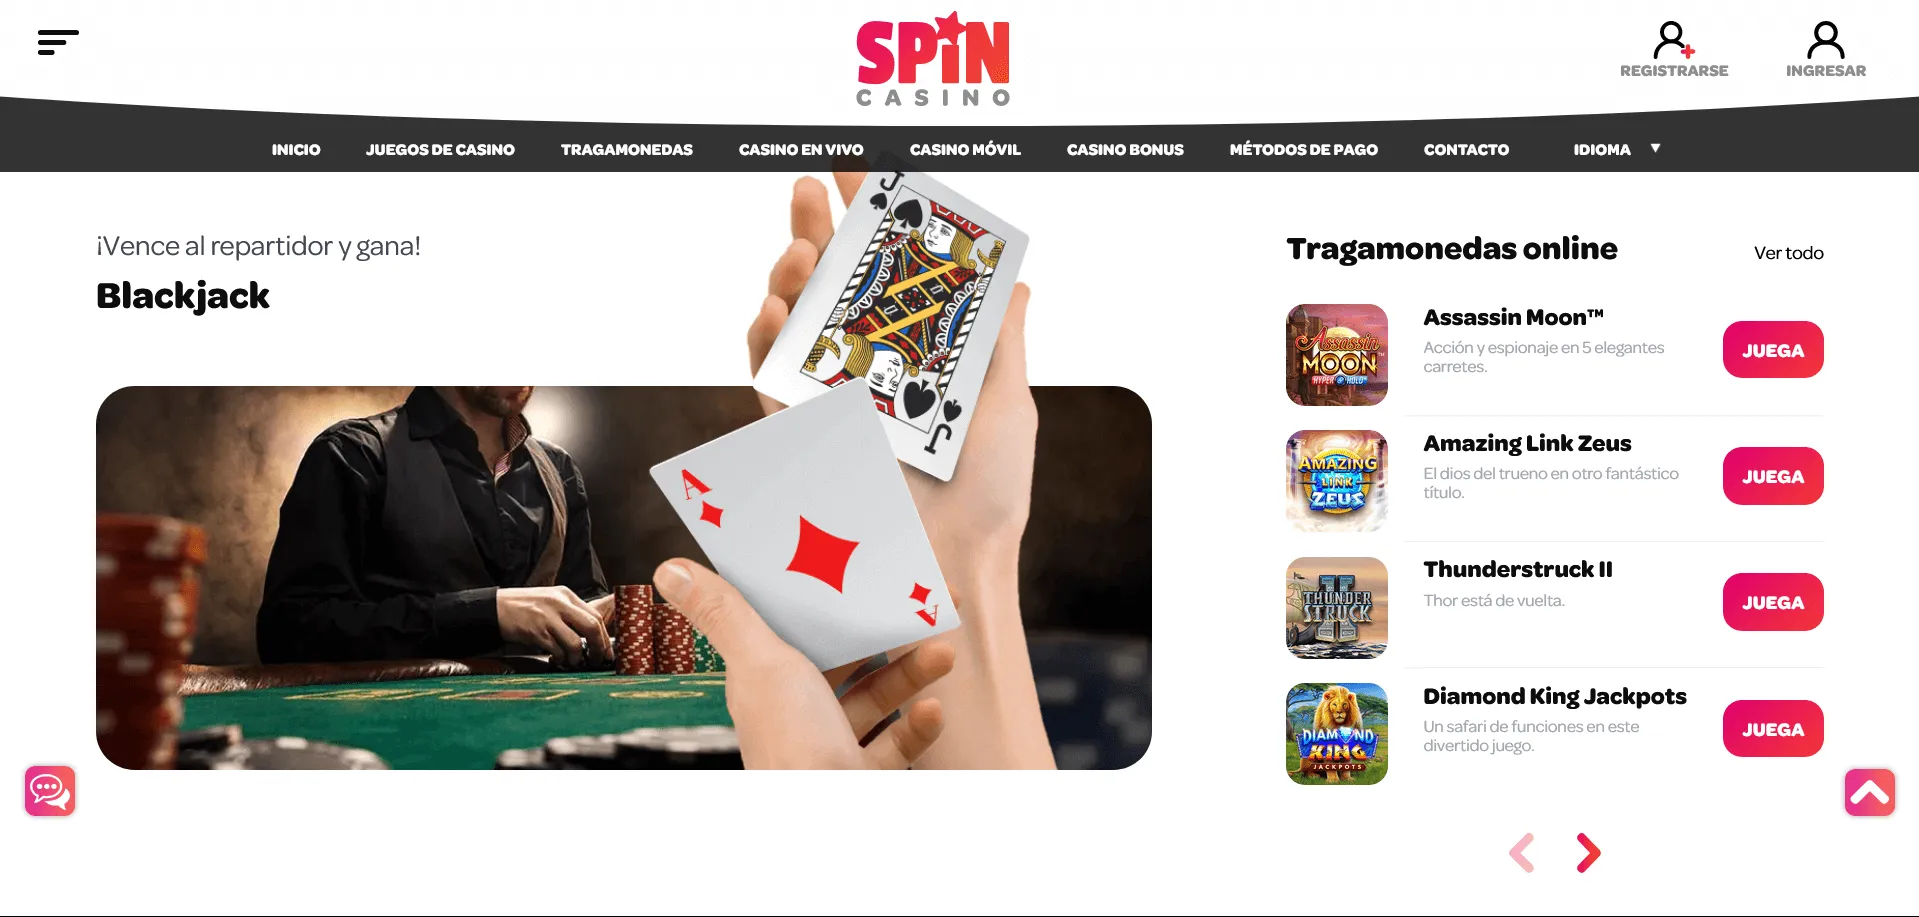 Condiciones de registro y juegos populares en Spin Casino